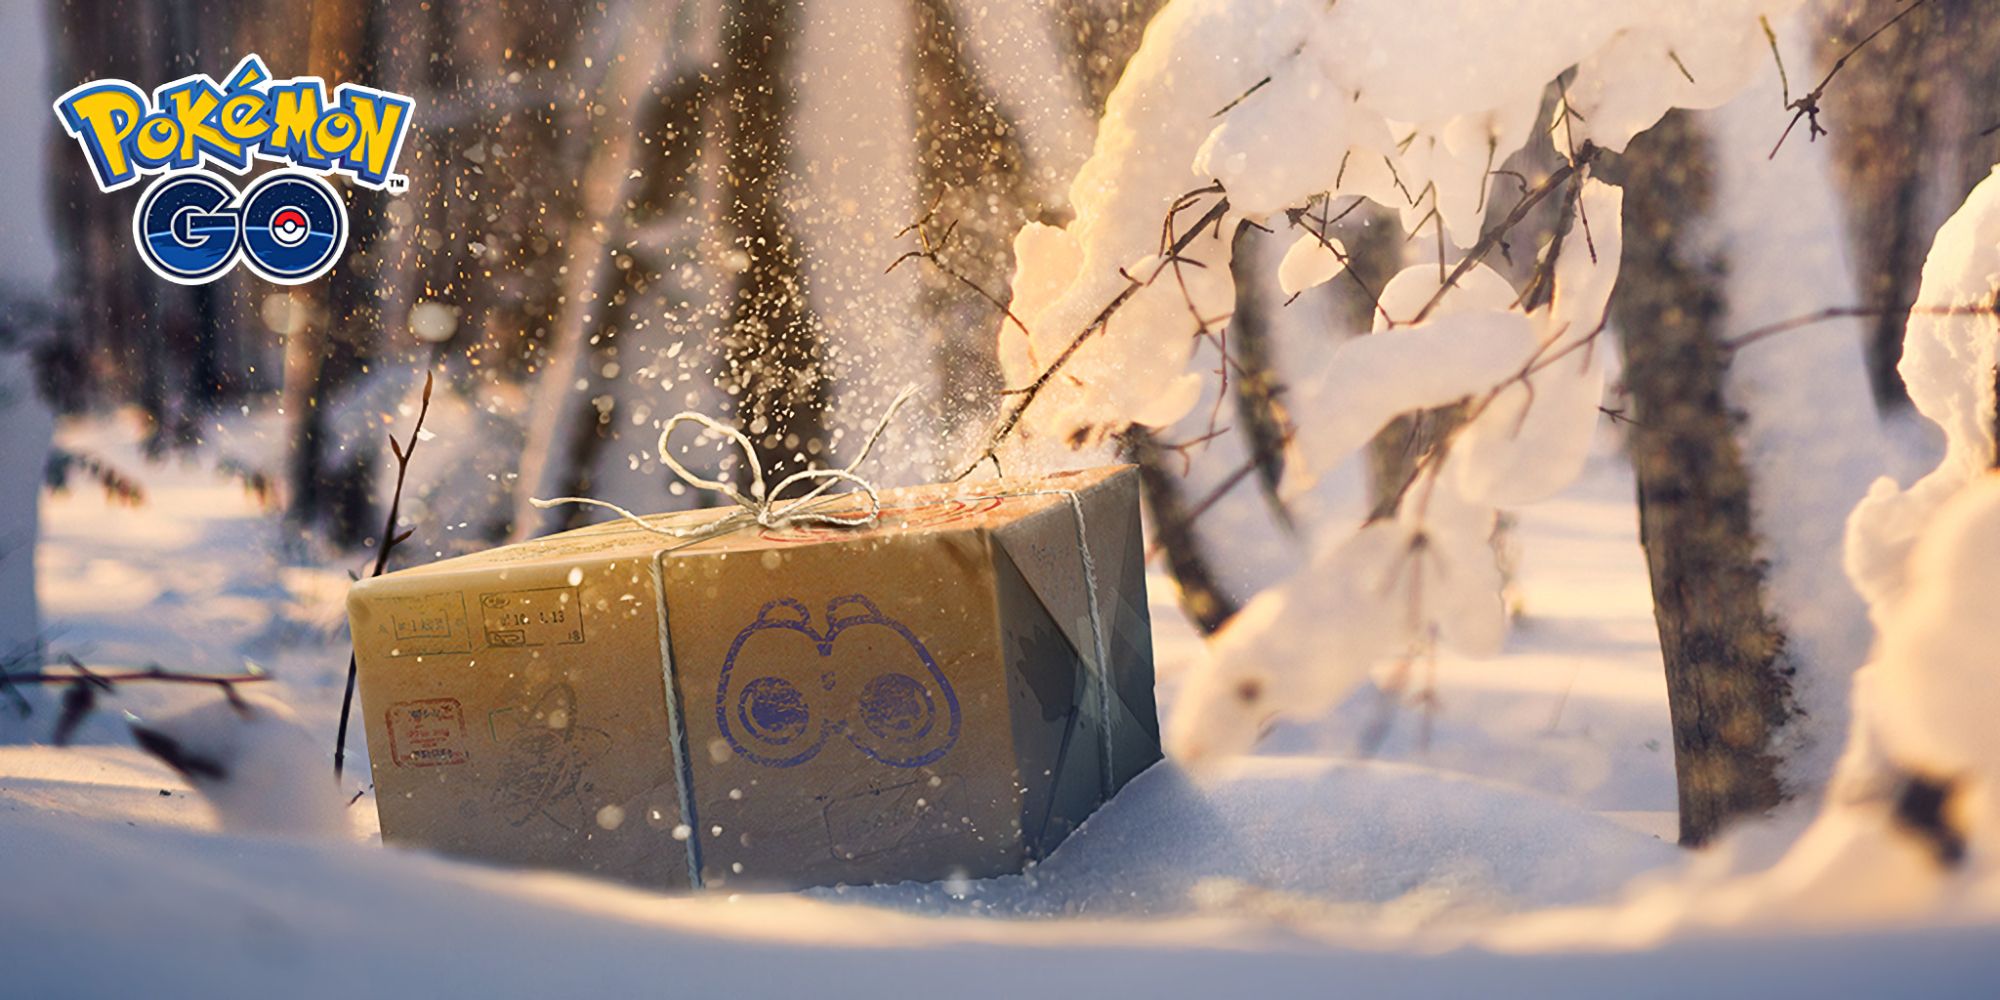 Une boîte enveloppée assise dans la neige, avec le logo Pokémon GO dans le coin supérieur gauche de l'image.